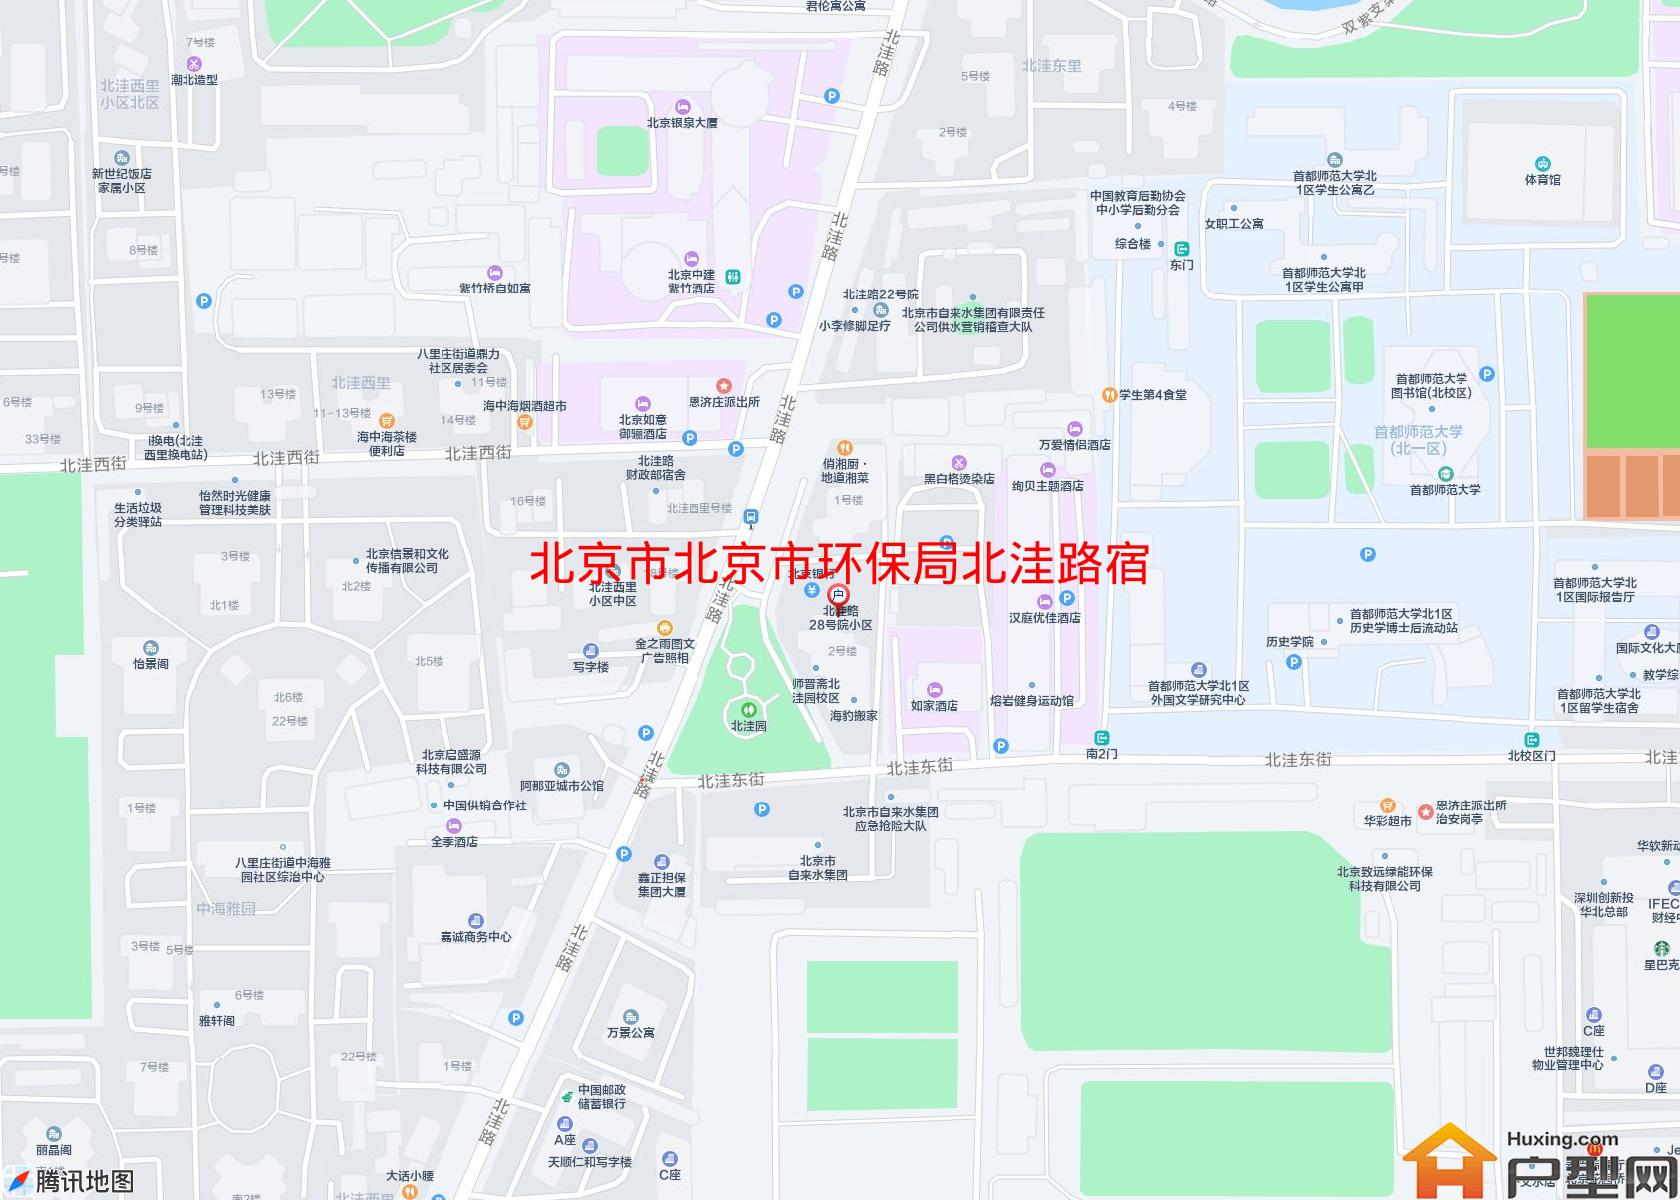 北京市环保局北洼路宿舍小区 - 户型网